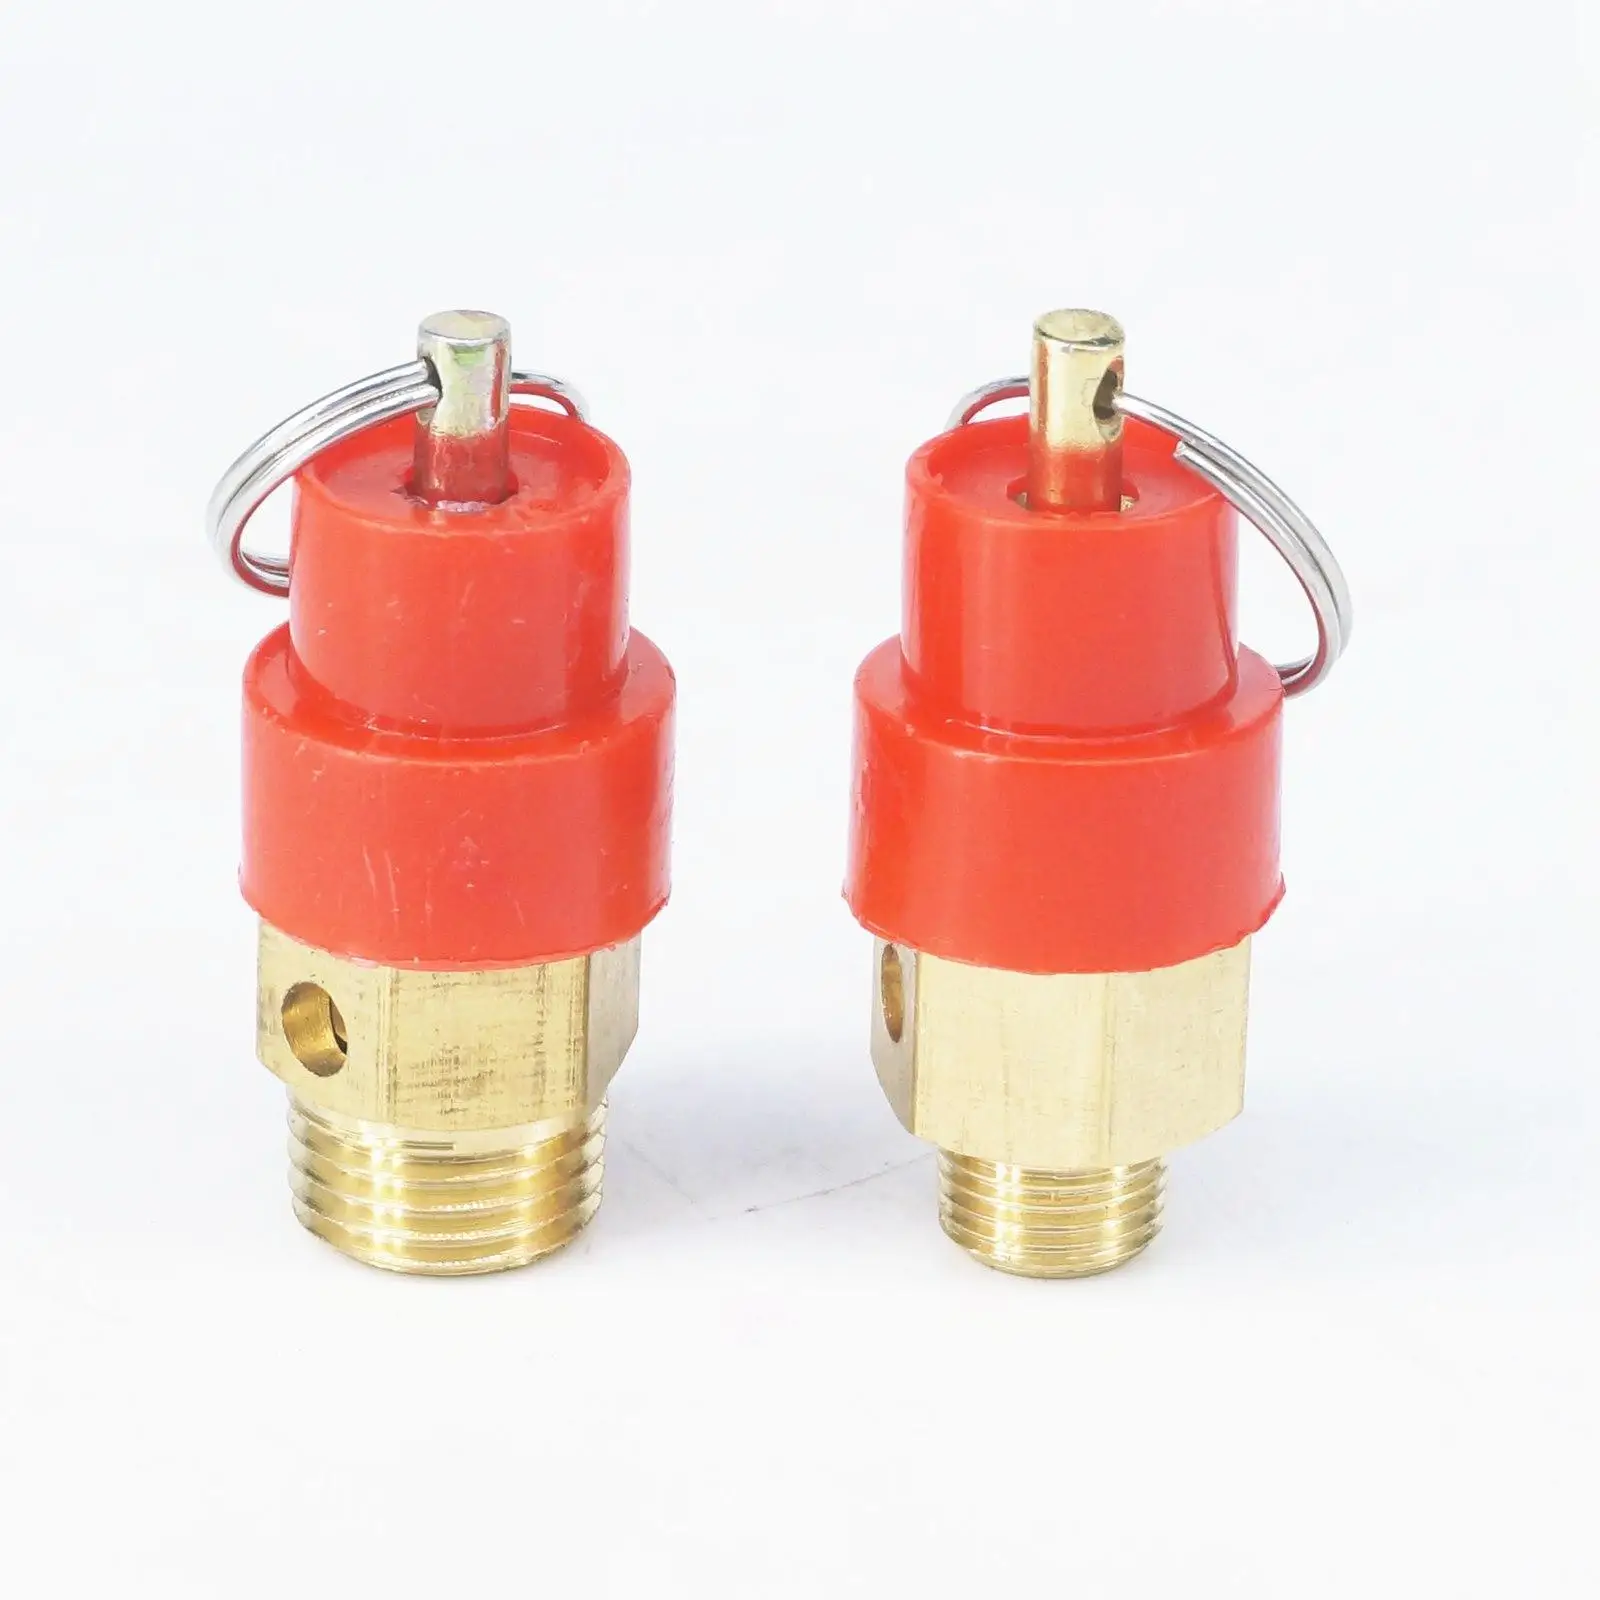 

Красный 3-15 бар 1/8 "1/4" BSP Мужской латунный клапан безопасности воздуха, предохранительный клапан, клапан сброса давления, воздушный компрессор Pneumaitc